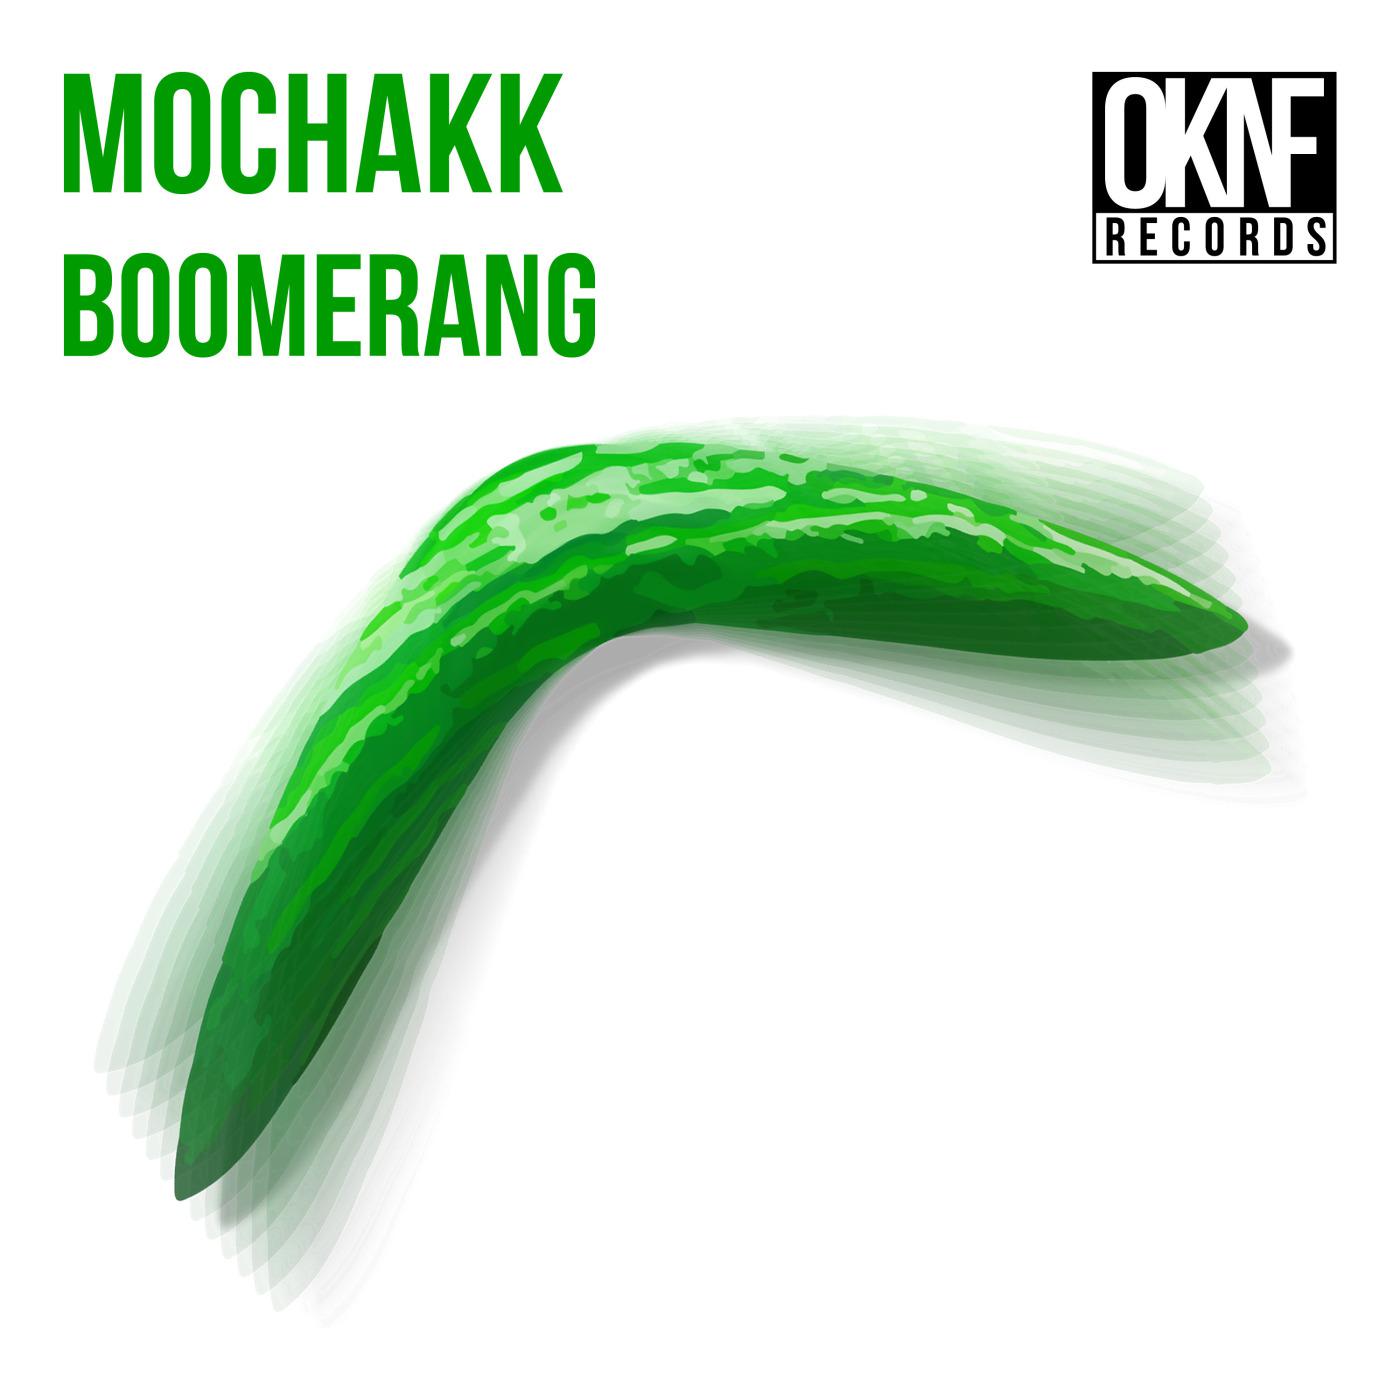 Mochakk - Cucumbers